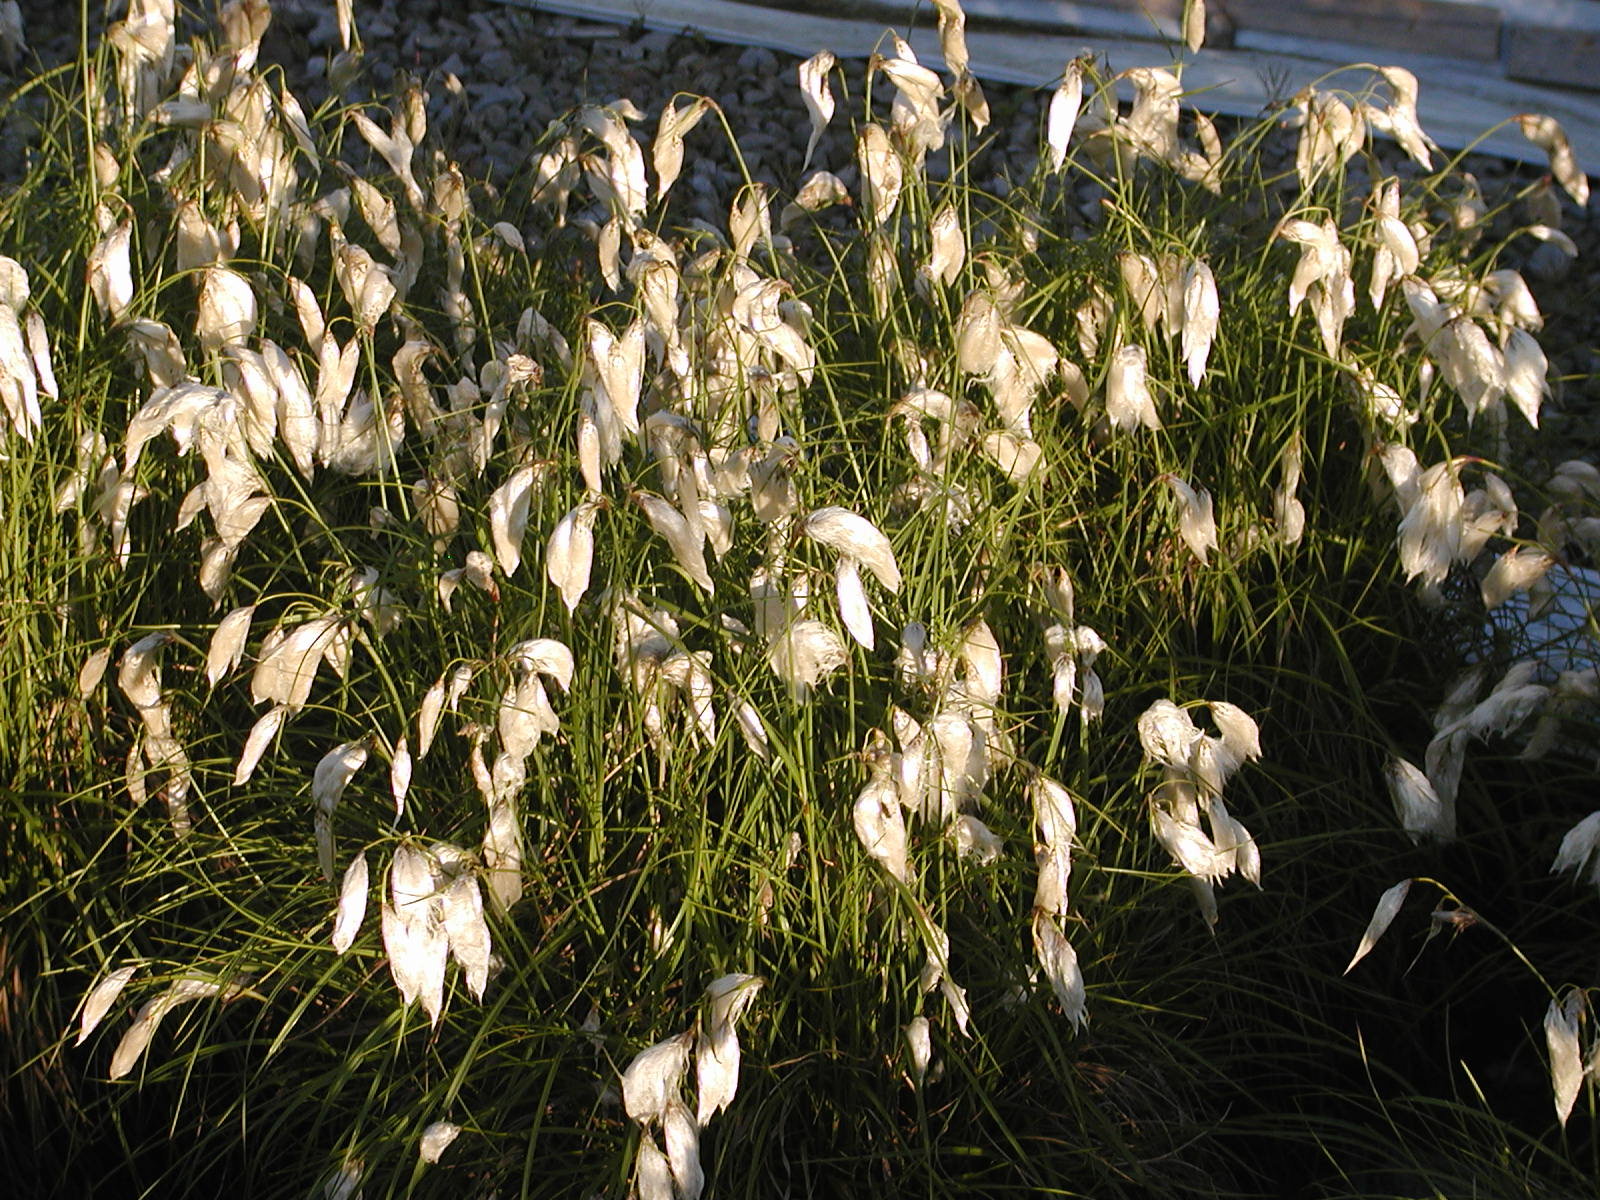 ERIOPHORUM angustifolium - Cotton Grass